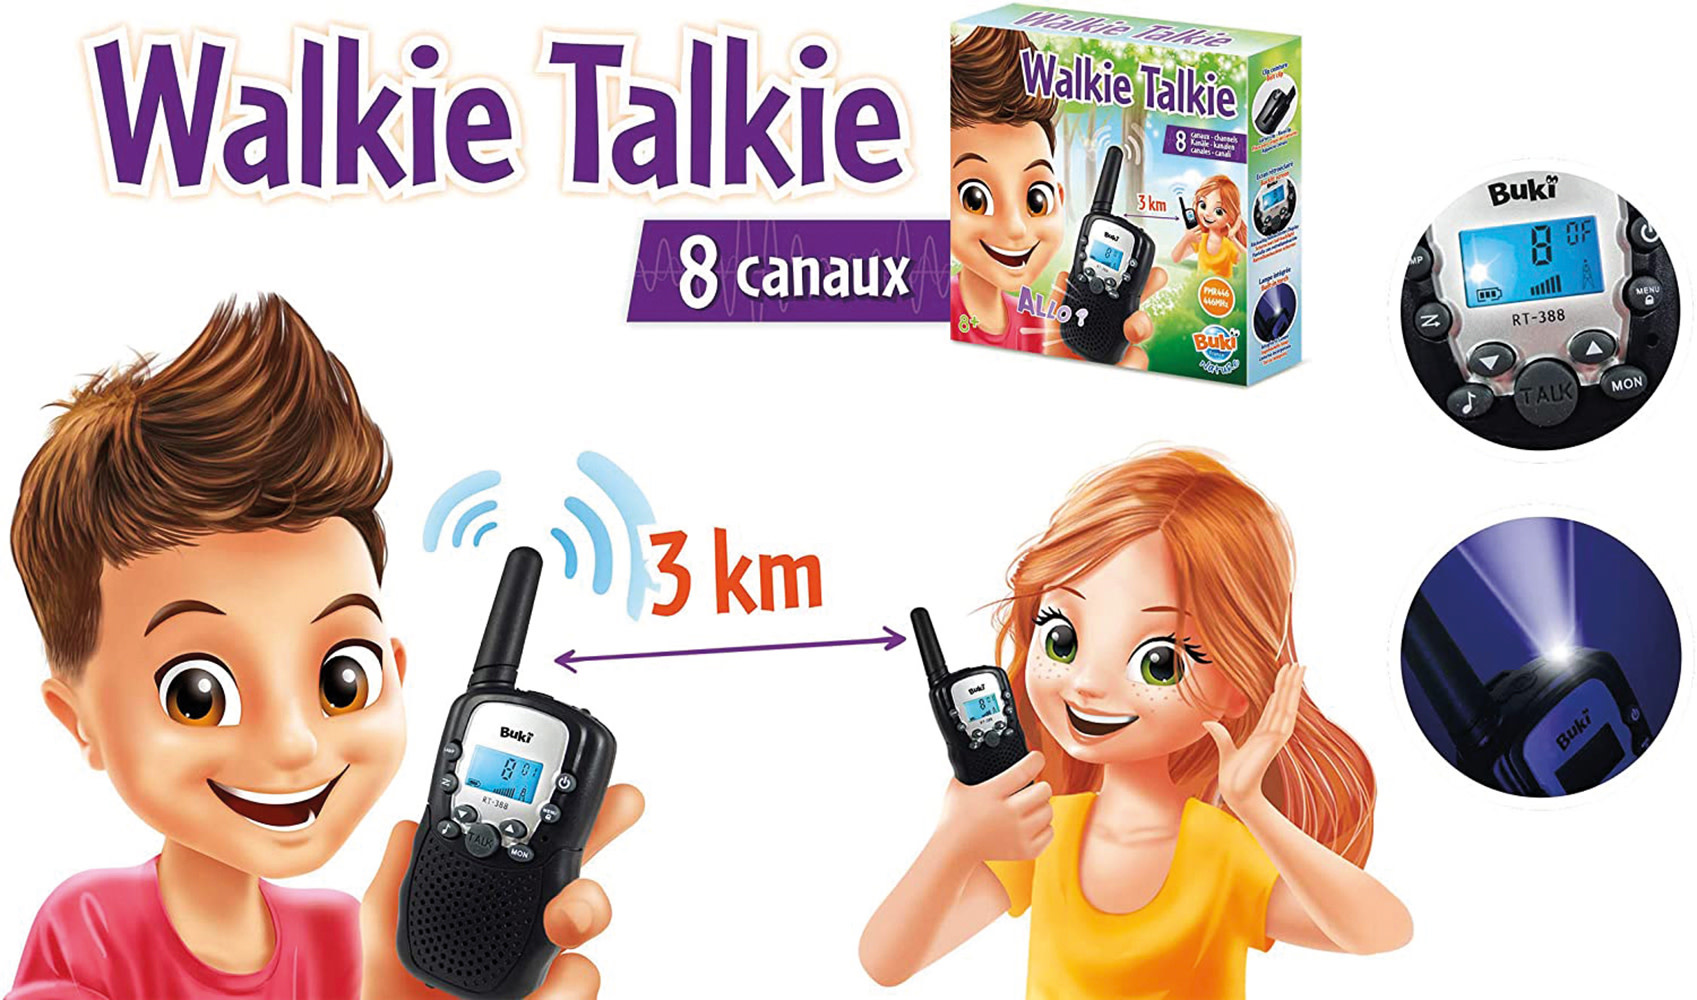 Buki Buki - Walkie Talkie